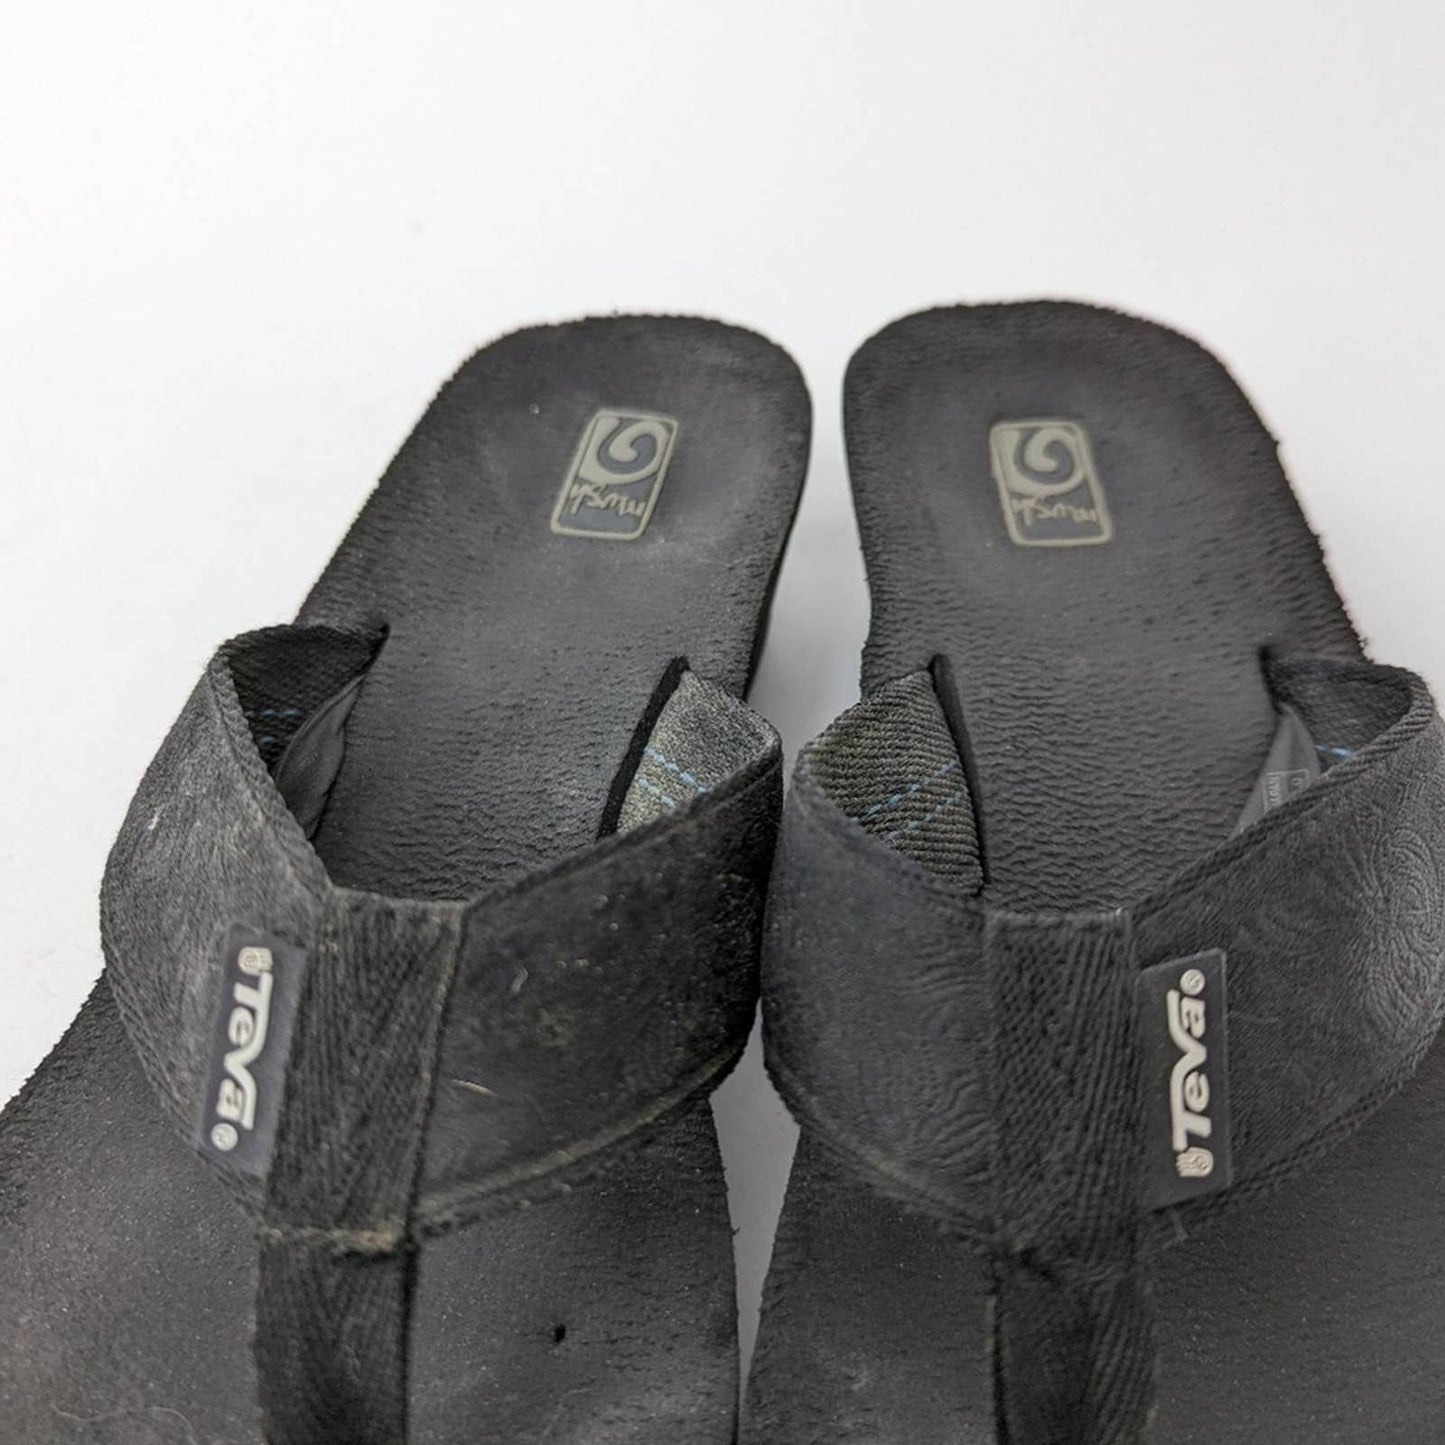 Teva Mush Black Wedge Flip Flop Sandals